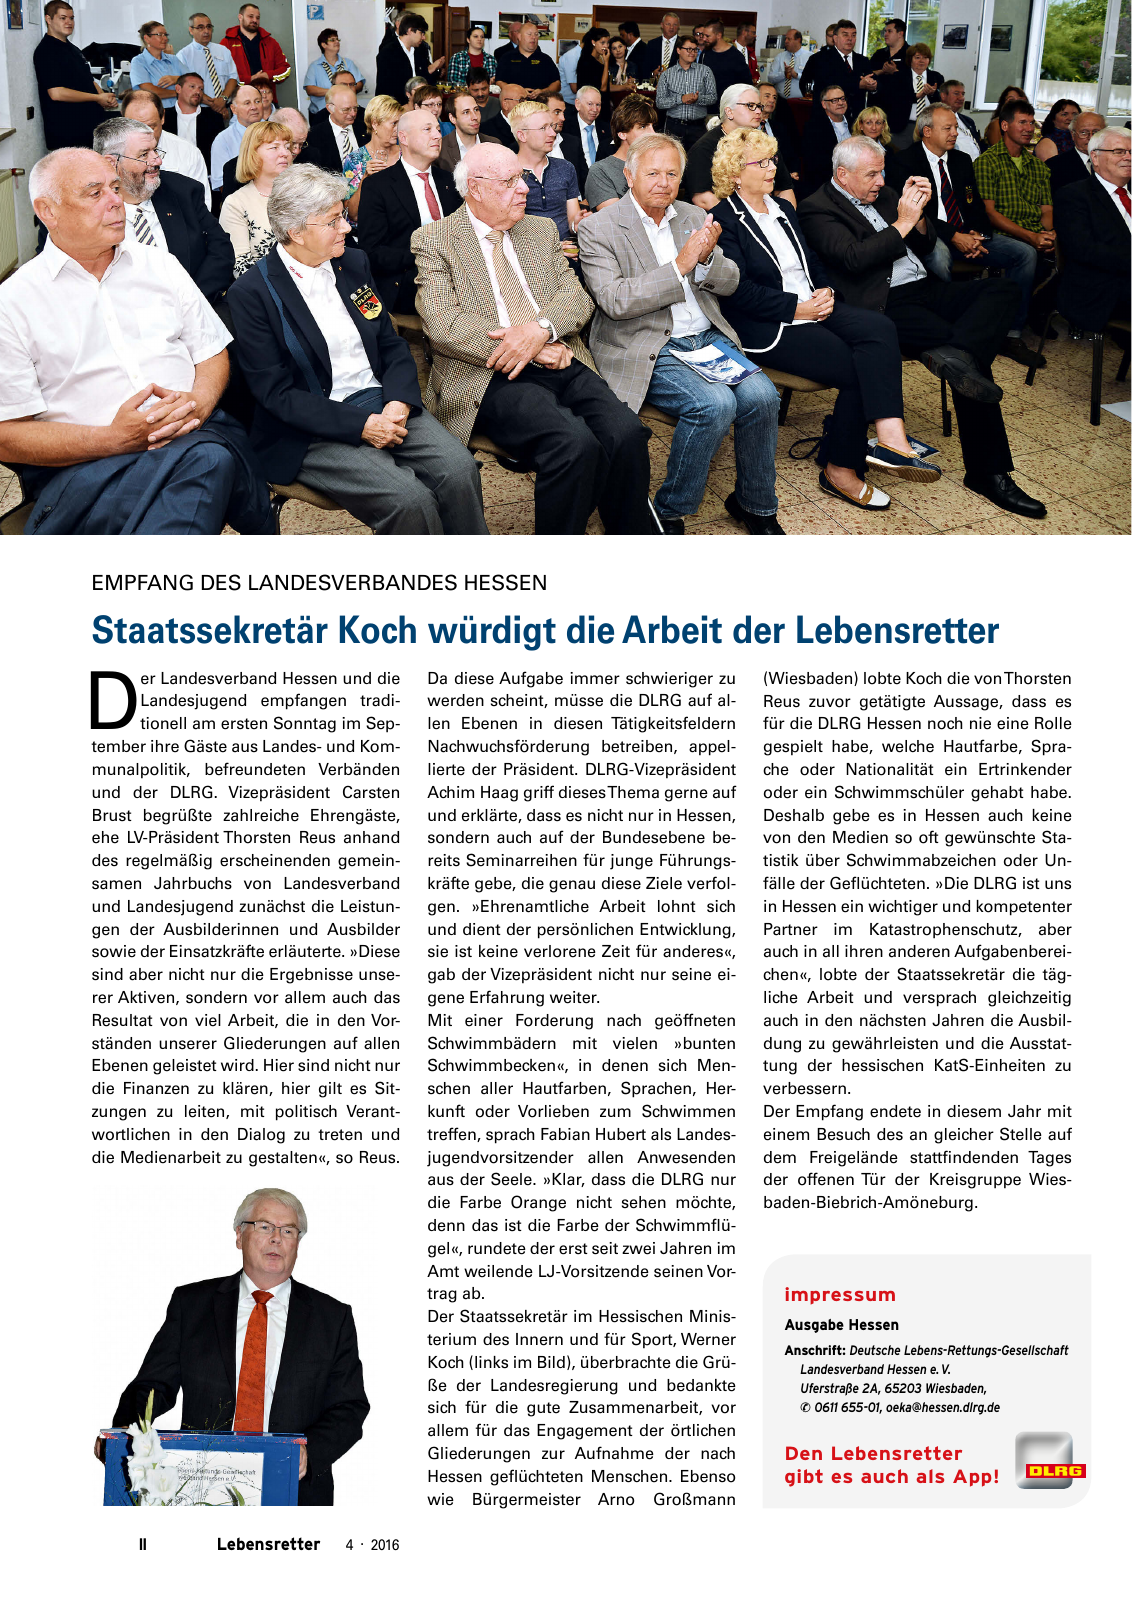 Vorschau Lebensretter 4/2016 - Regionalausgabe Hessen Seite 4